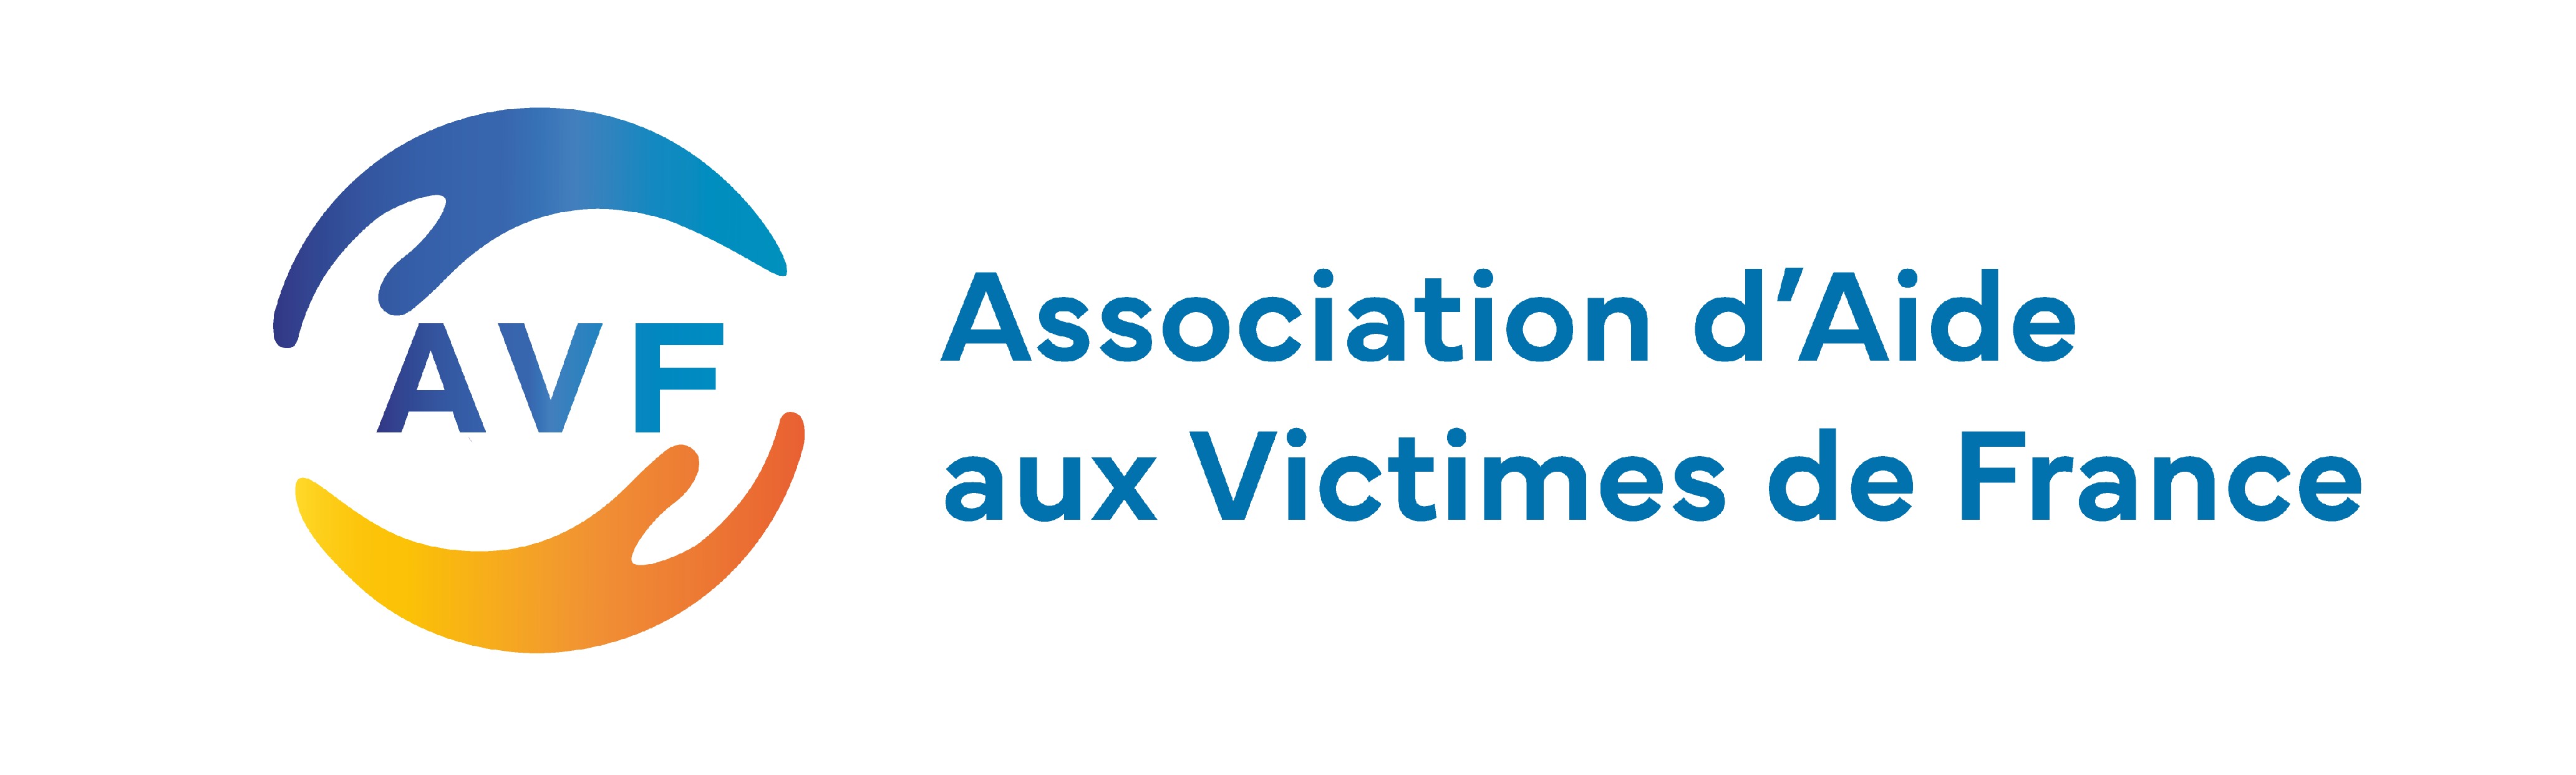 Association d'Aide aux Victimes de France